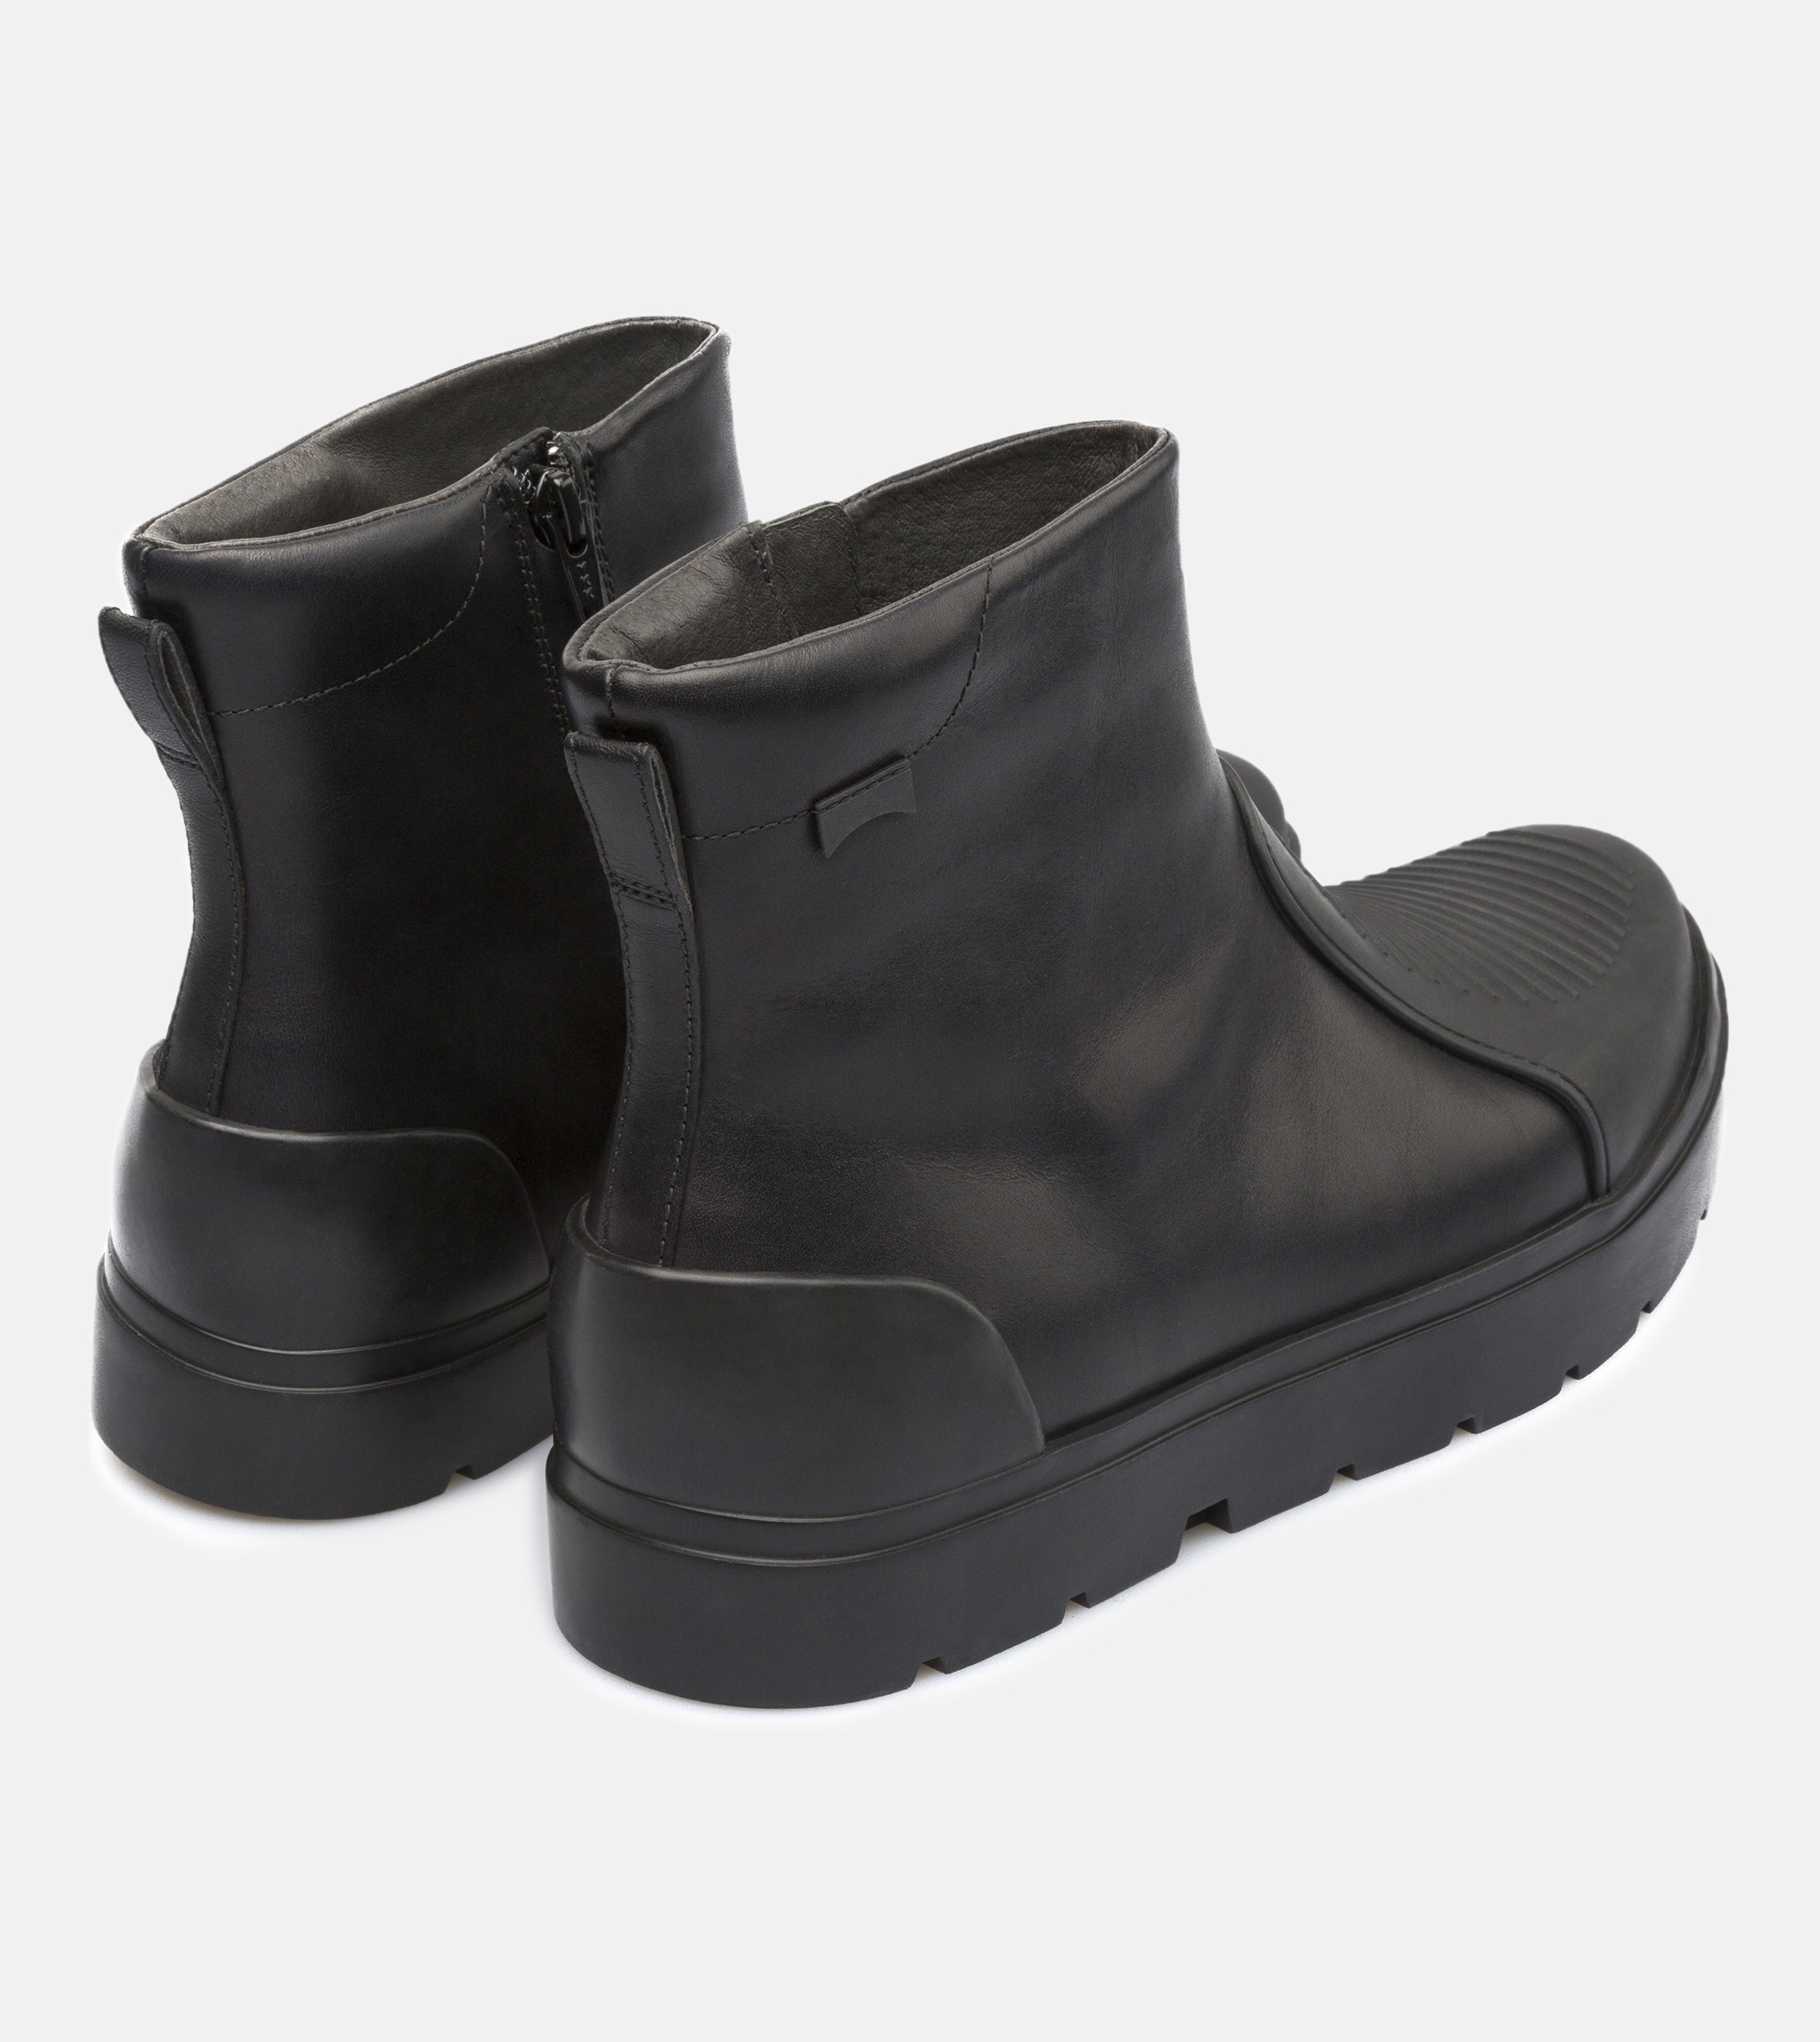 Lyst - Camper Vintar Boots in Black for Men